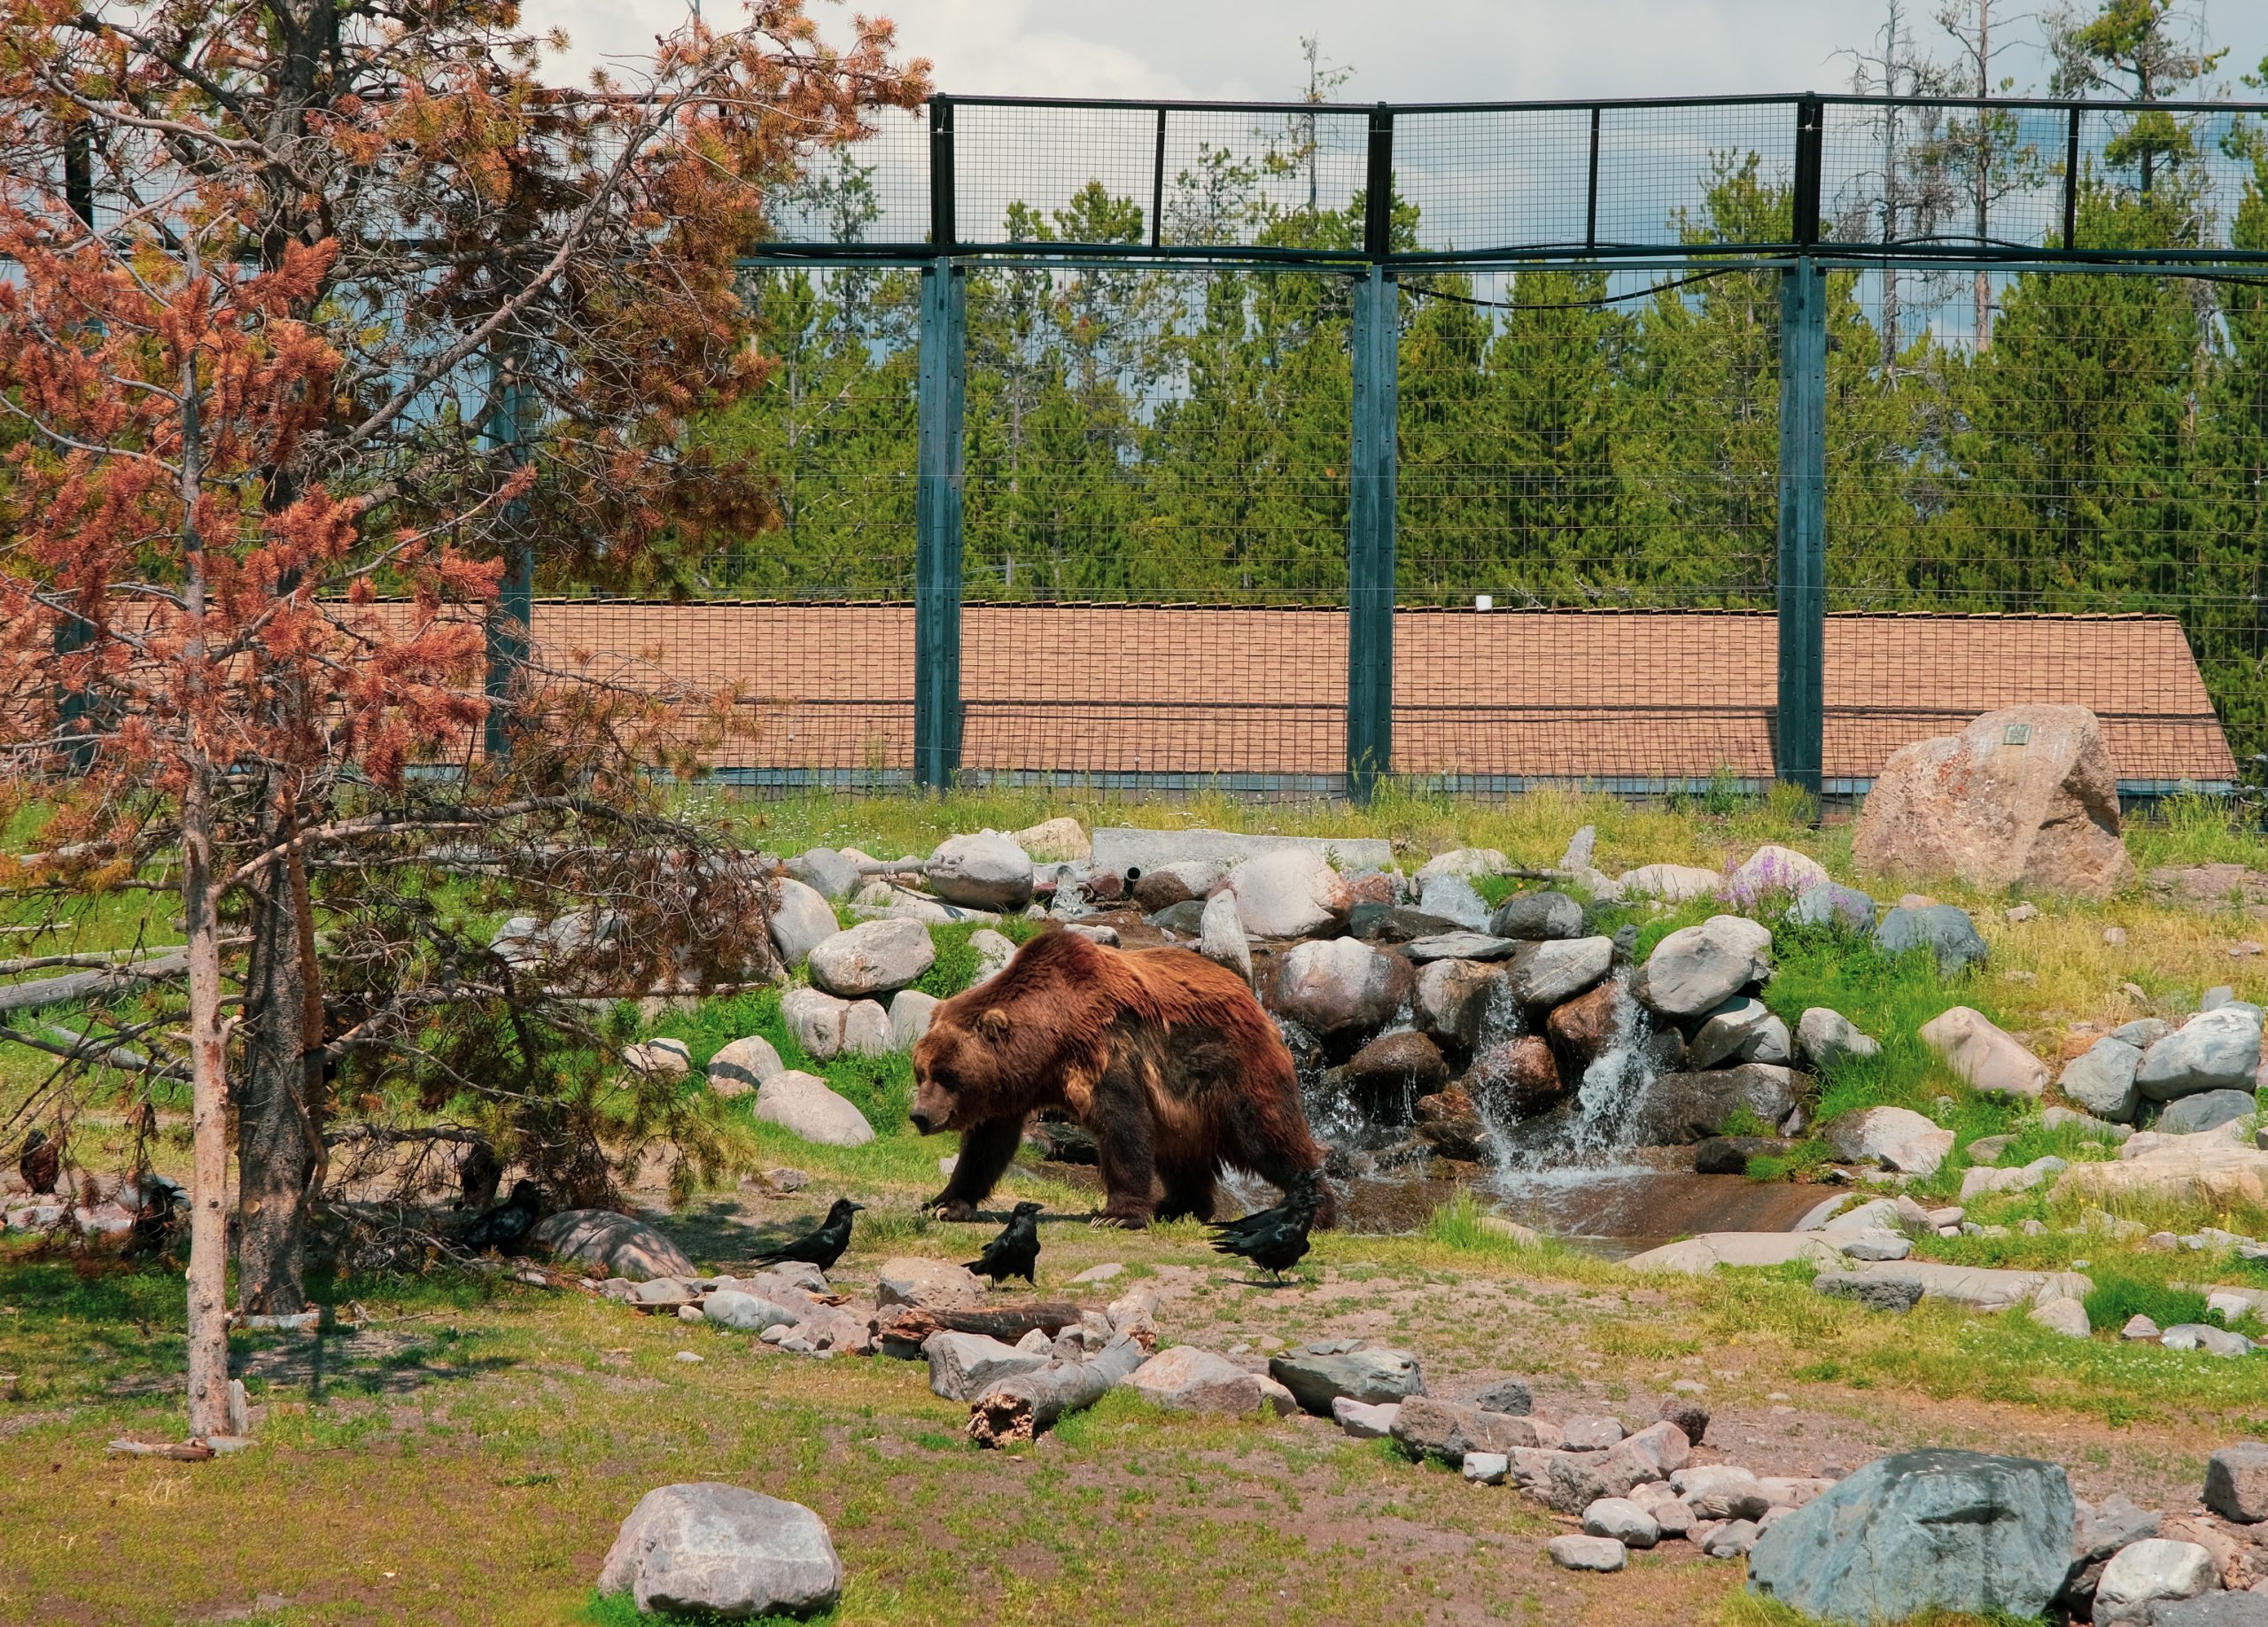 Największy niedźwiedź grizzly w Centrum Odkryć Grizzly and Wolf, gruby 475 kilogramów siły mięśni